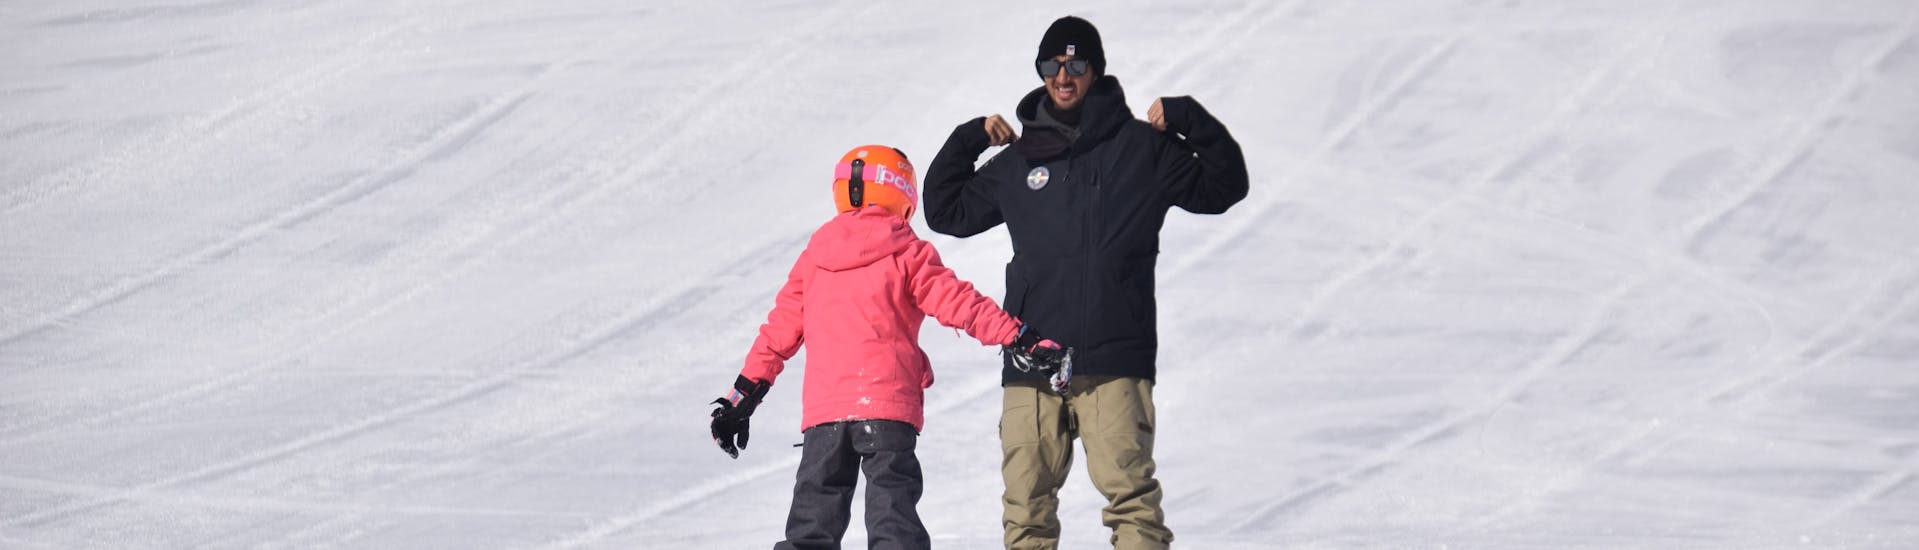 Istruttore di snowboard che spiega l'esercizio al partecipante di una delle lezioni private di snowboard per bambini e adulti di tutti i livelli a Livigno.